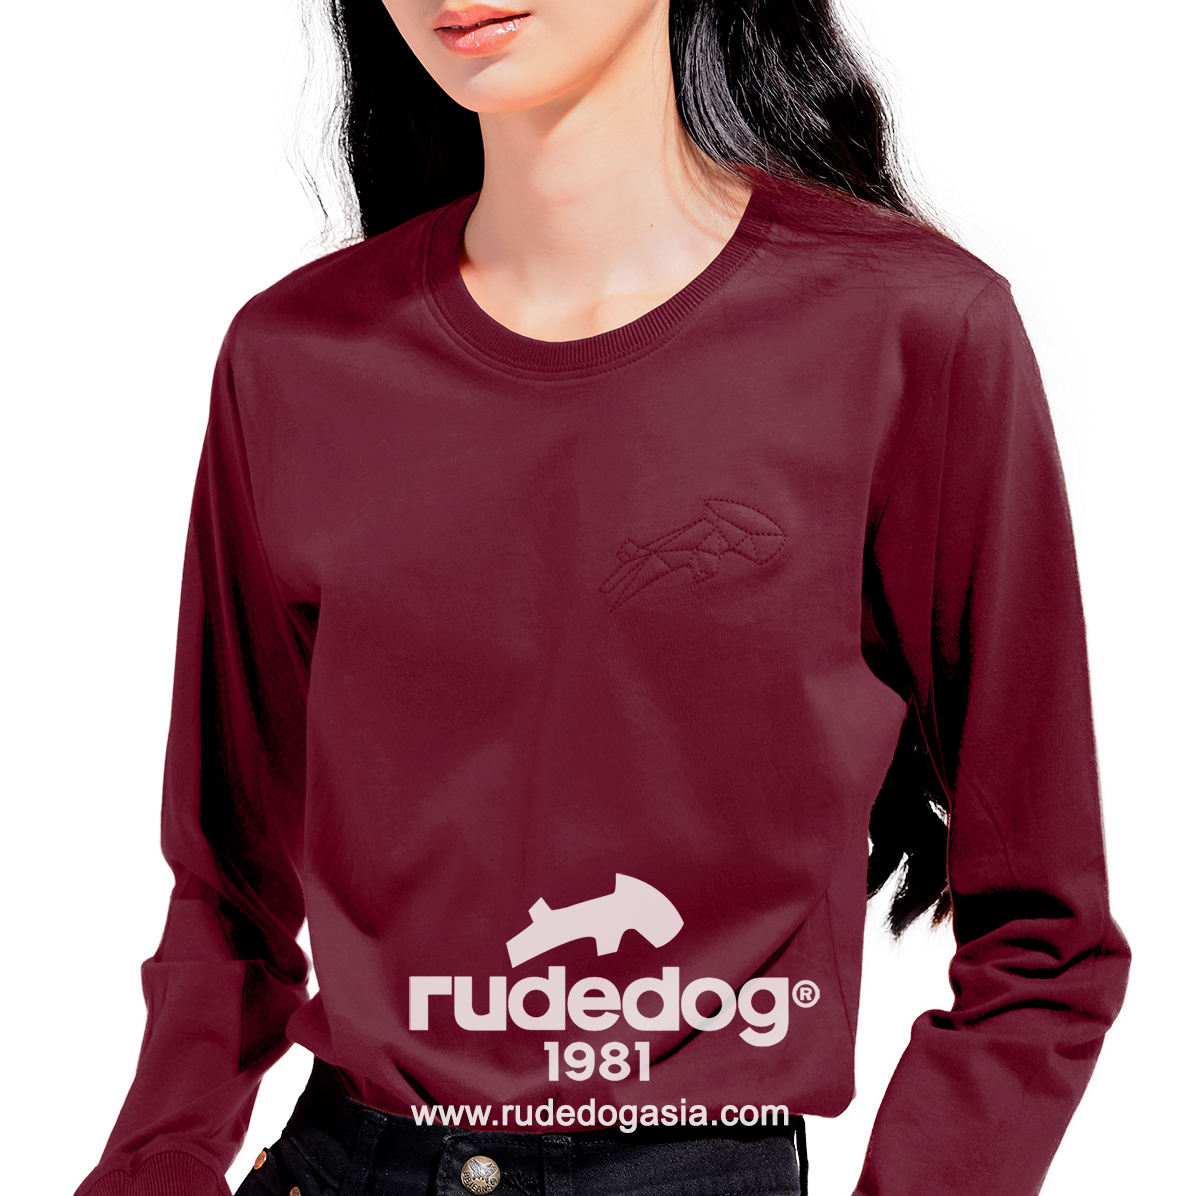 เสื้อยืดแขนยาว rudedog รุ่น Dogstar สีแดงทิเบต ผู้หญิง